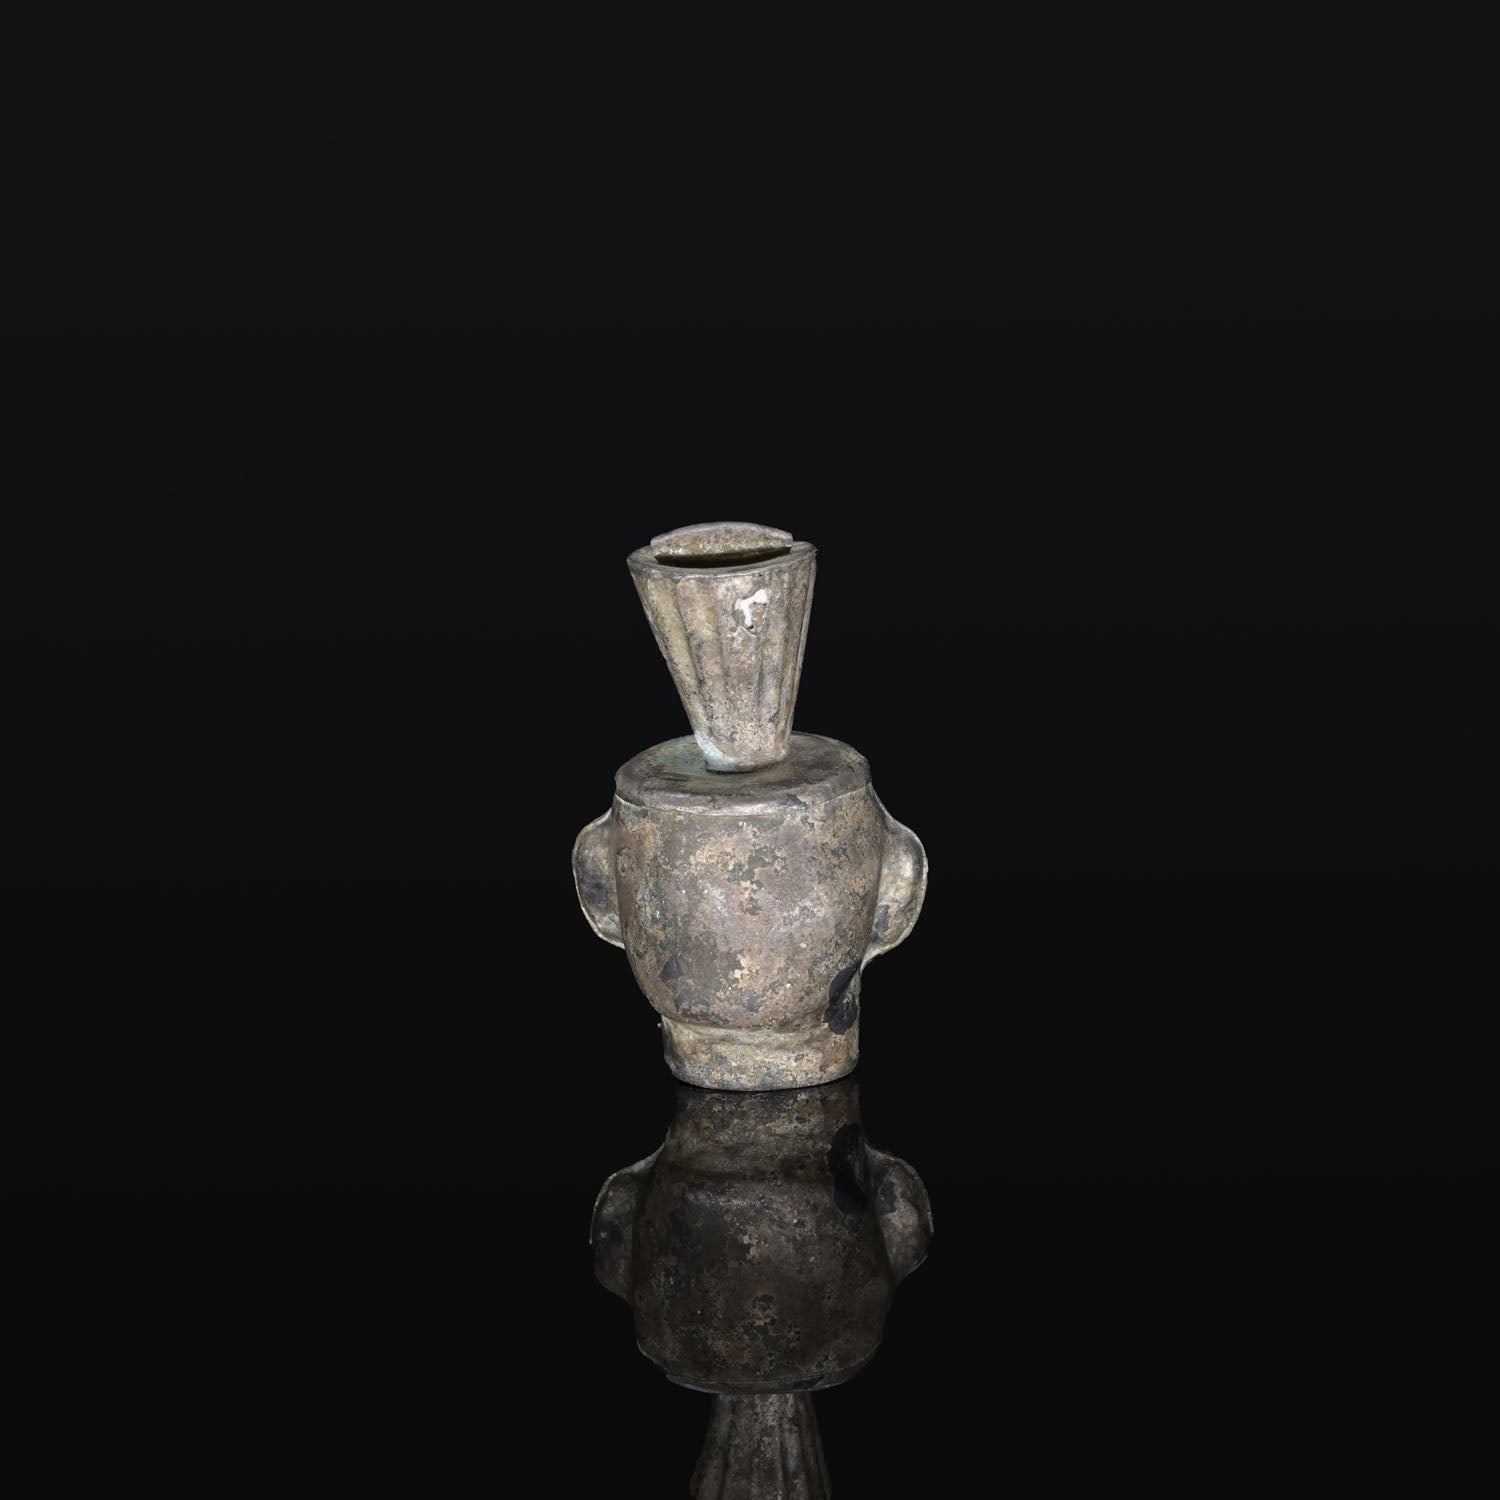 A fine silver Chimu-Inca Pendant<br><em> ca. 1300 - 1450 CE</em>